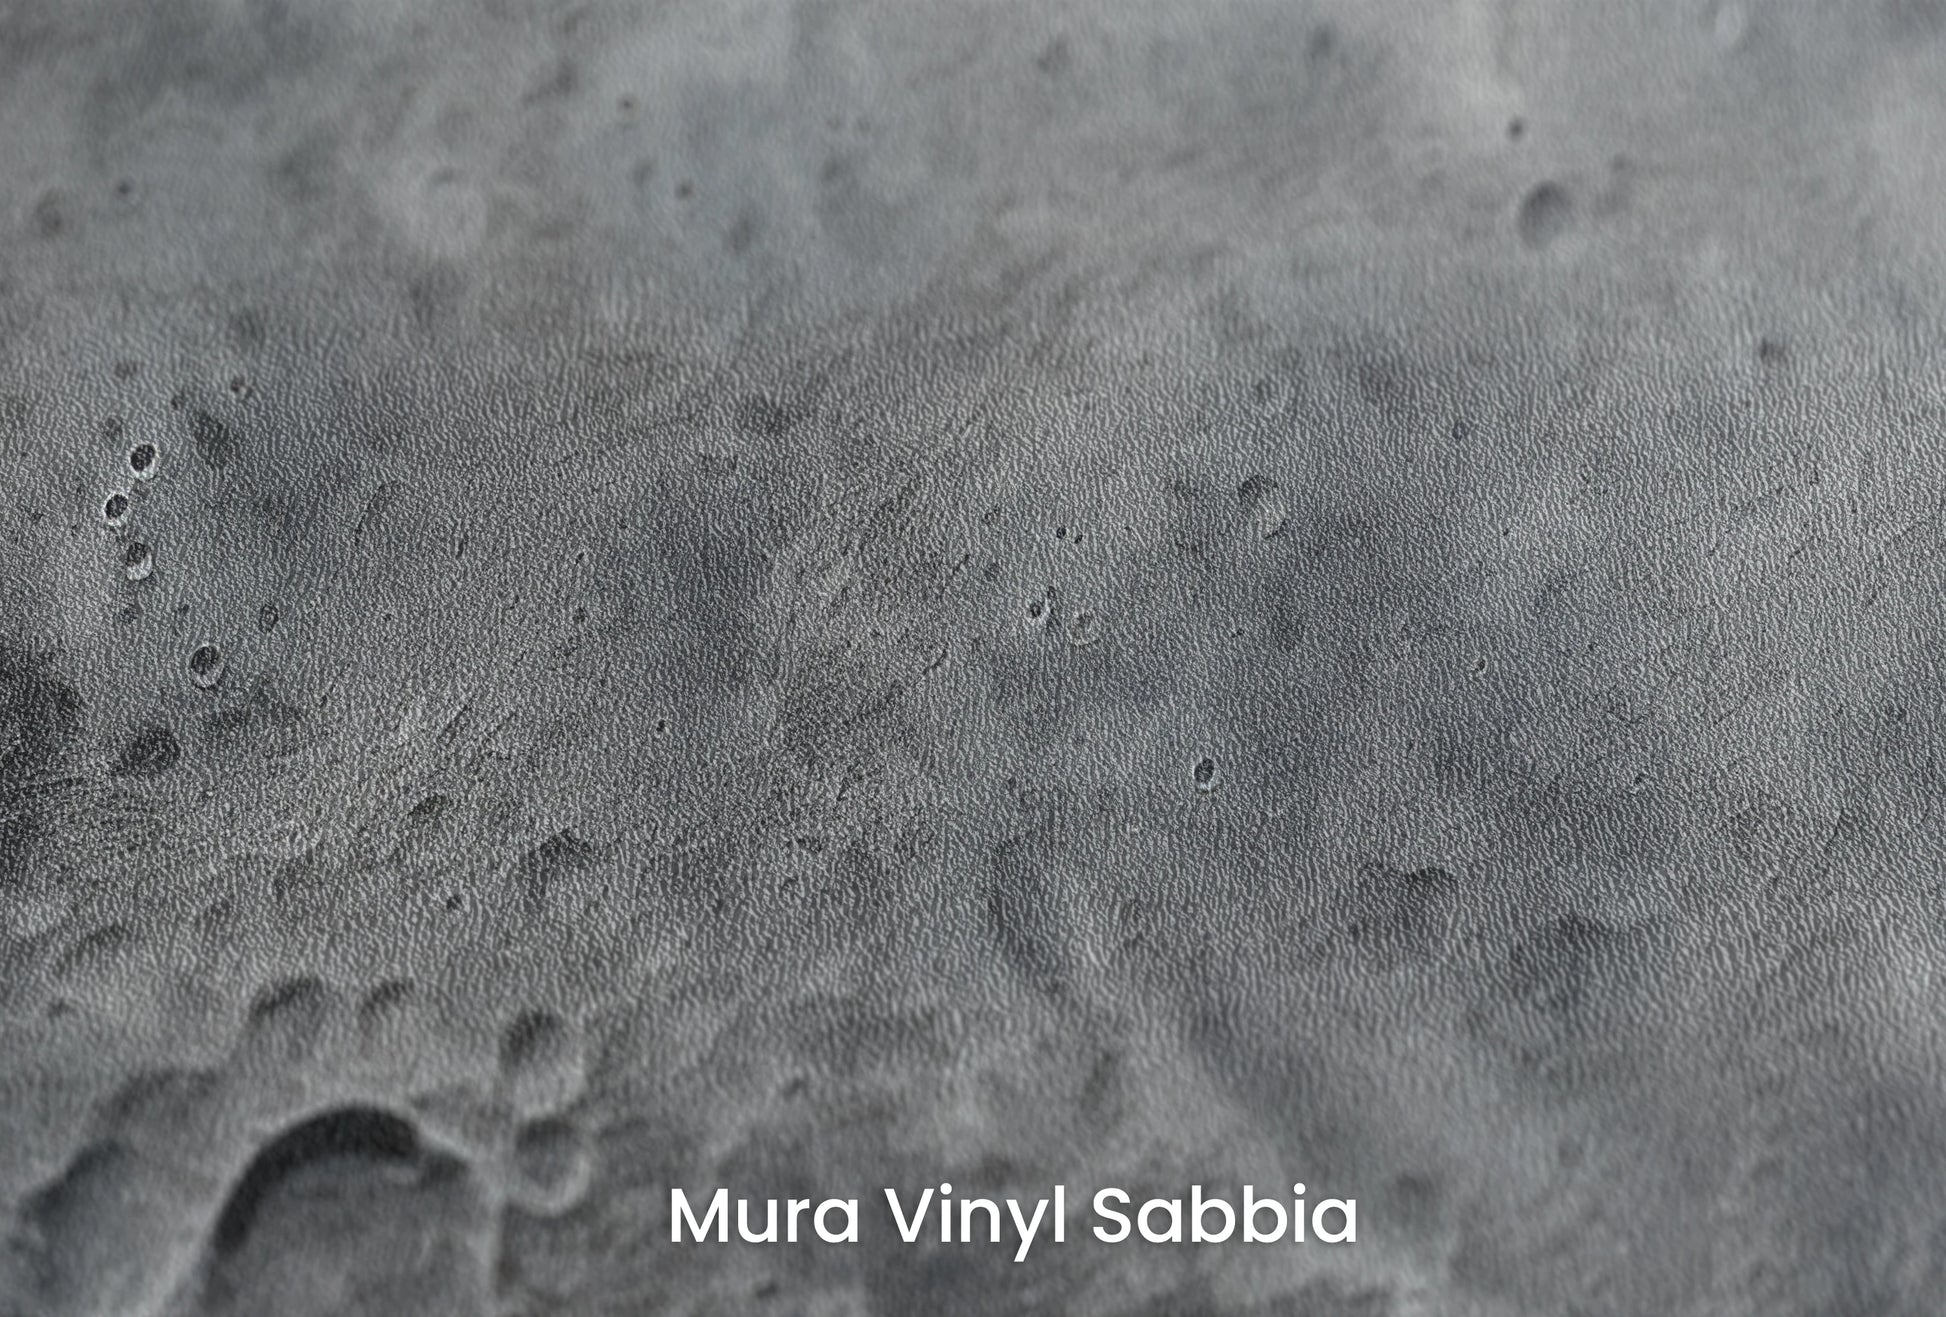 Zbliżenie na artystyczną fototapetę o nazwie Arctic Neptune na podłożu Mura Vinyl Sabbia struktura grubego ziarna piasku.